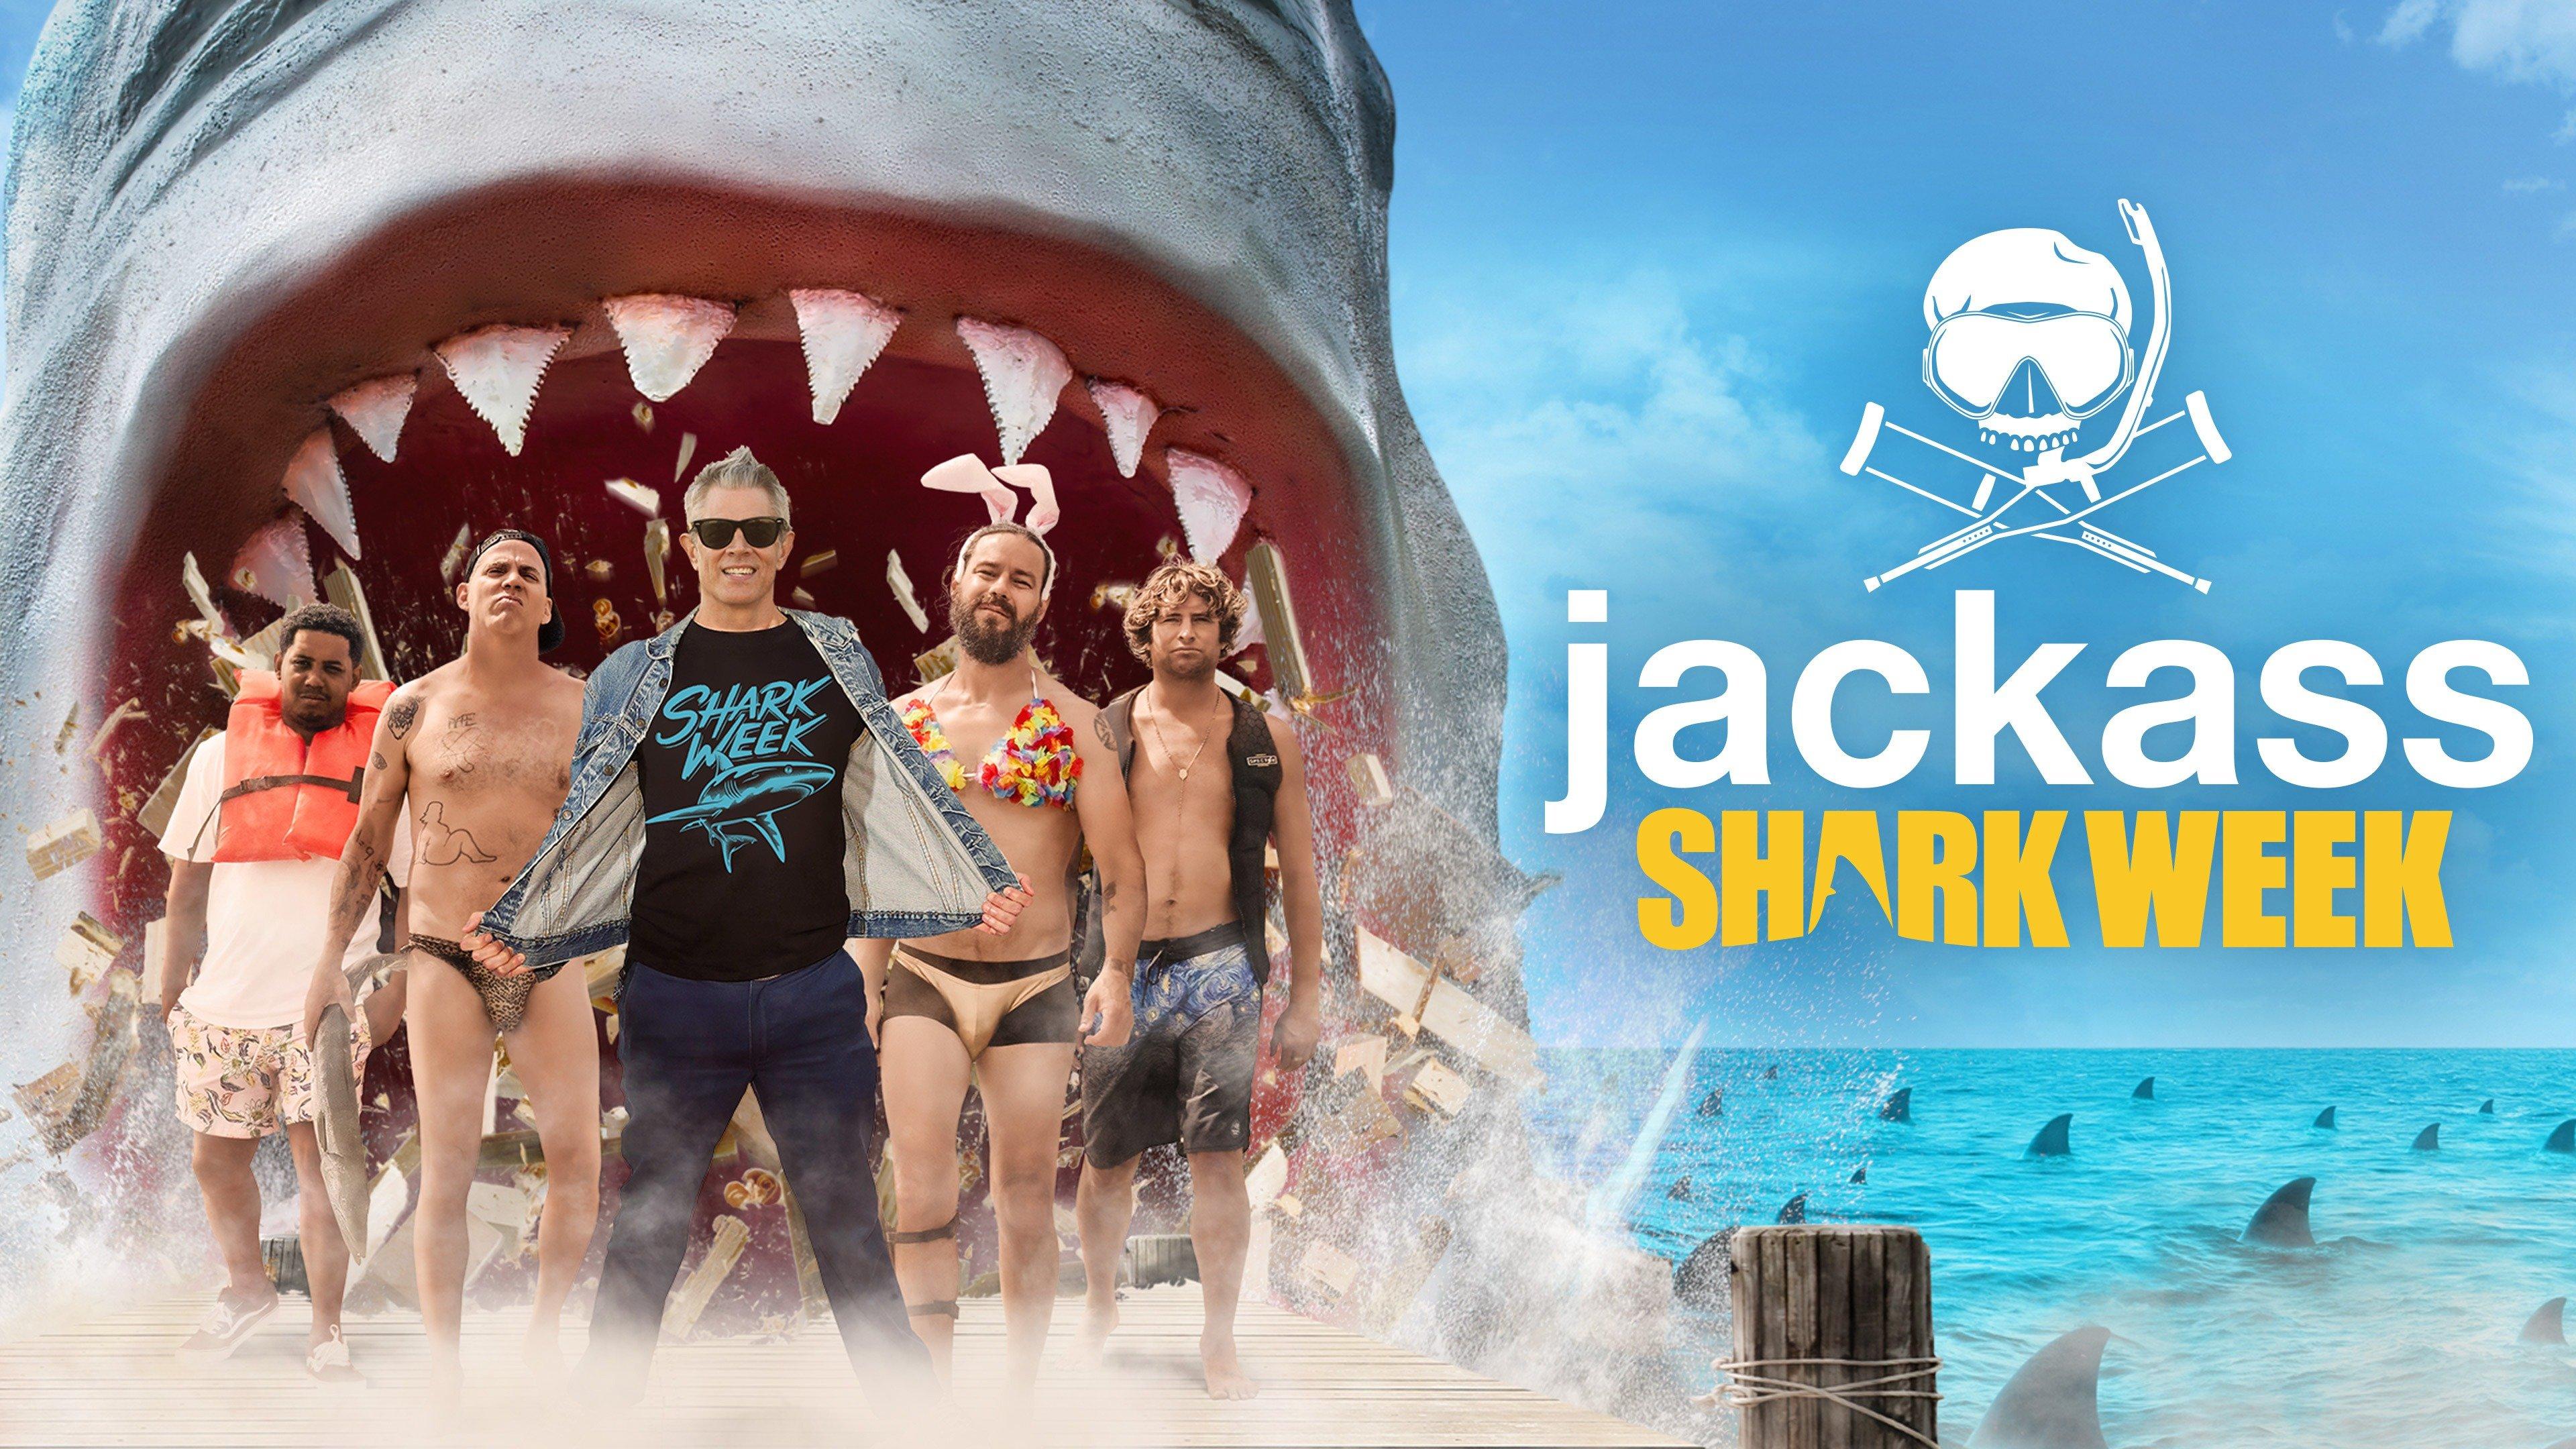 Watch Jackass Shark Week Streaming Online on Philo (Free Trial)